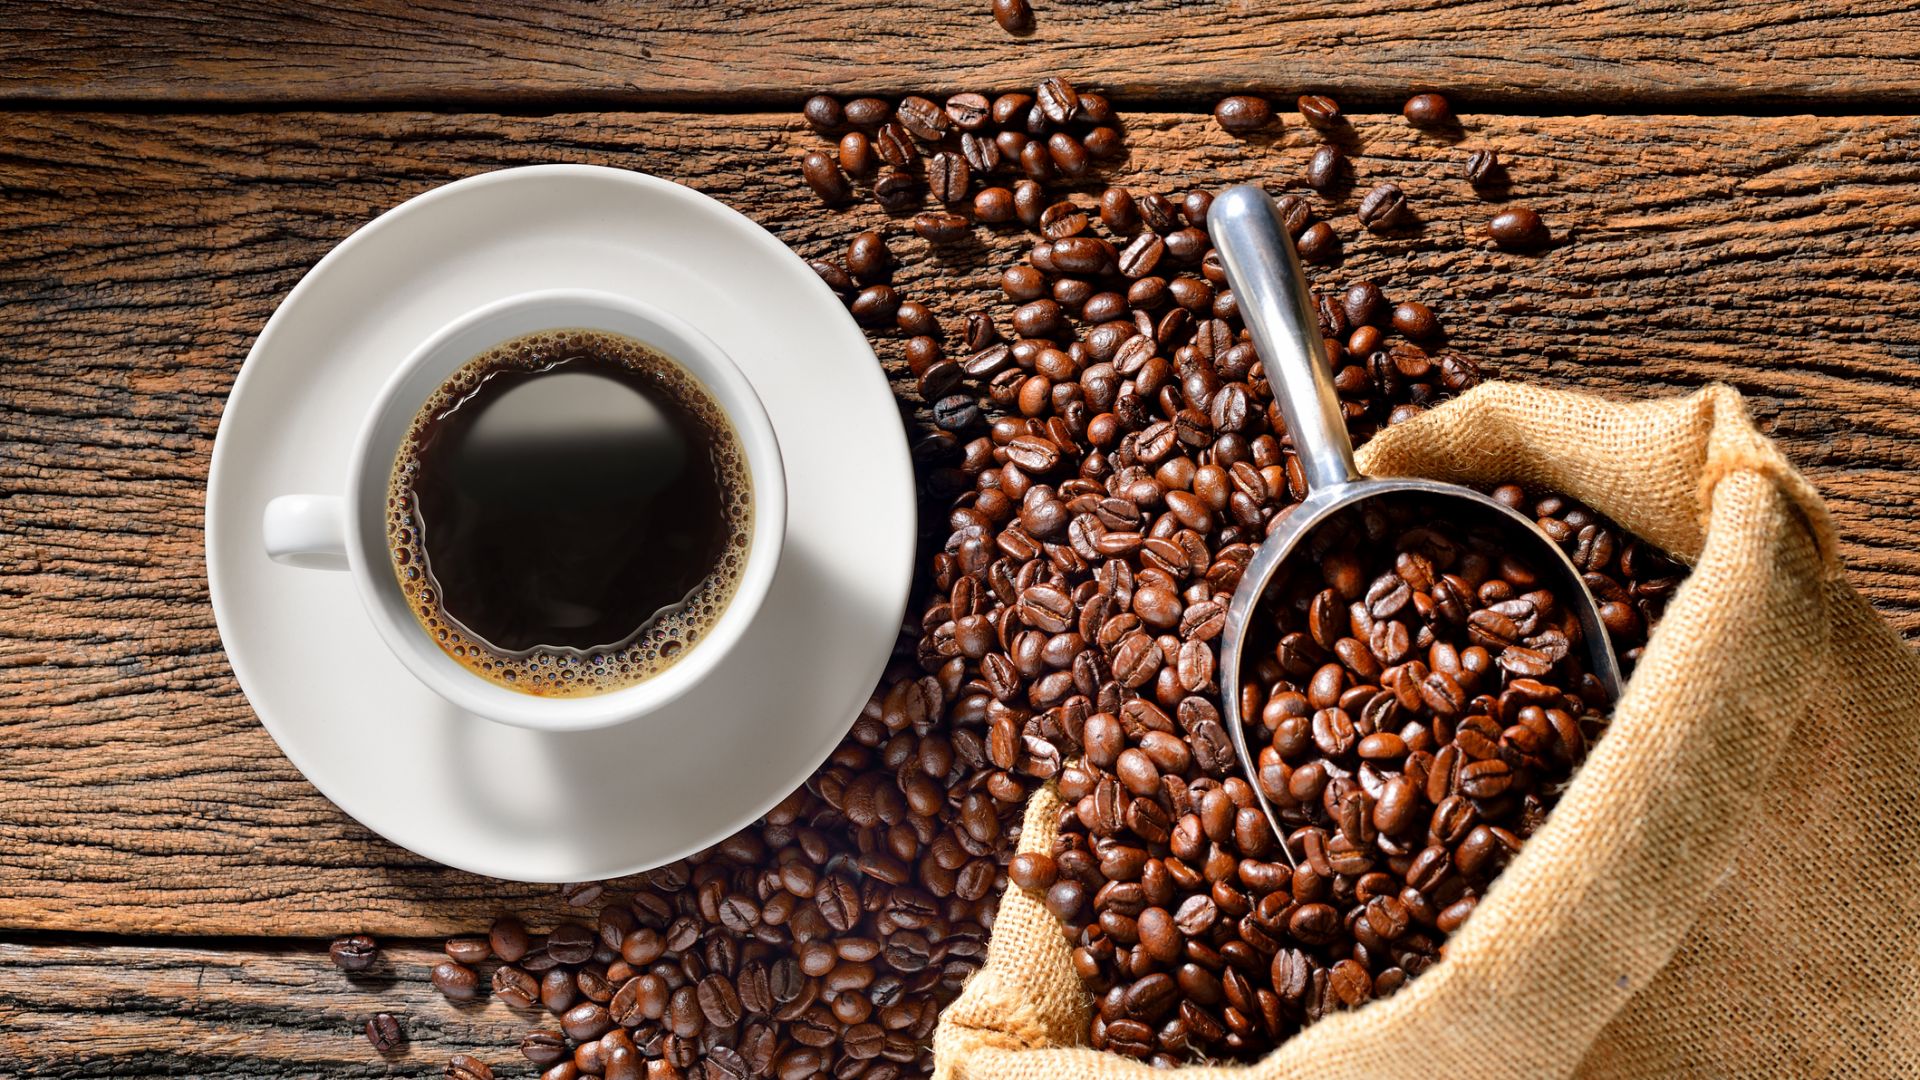 Кофеинът прави гъбичките по-устойчиви на лекарства